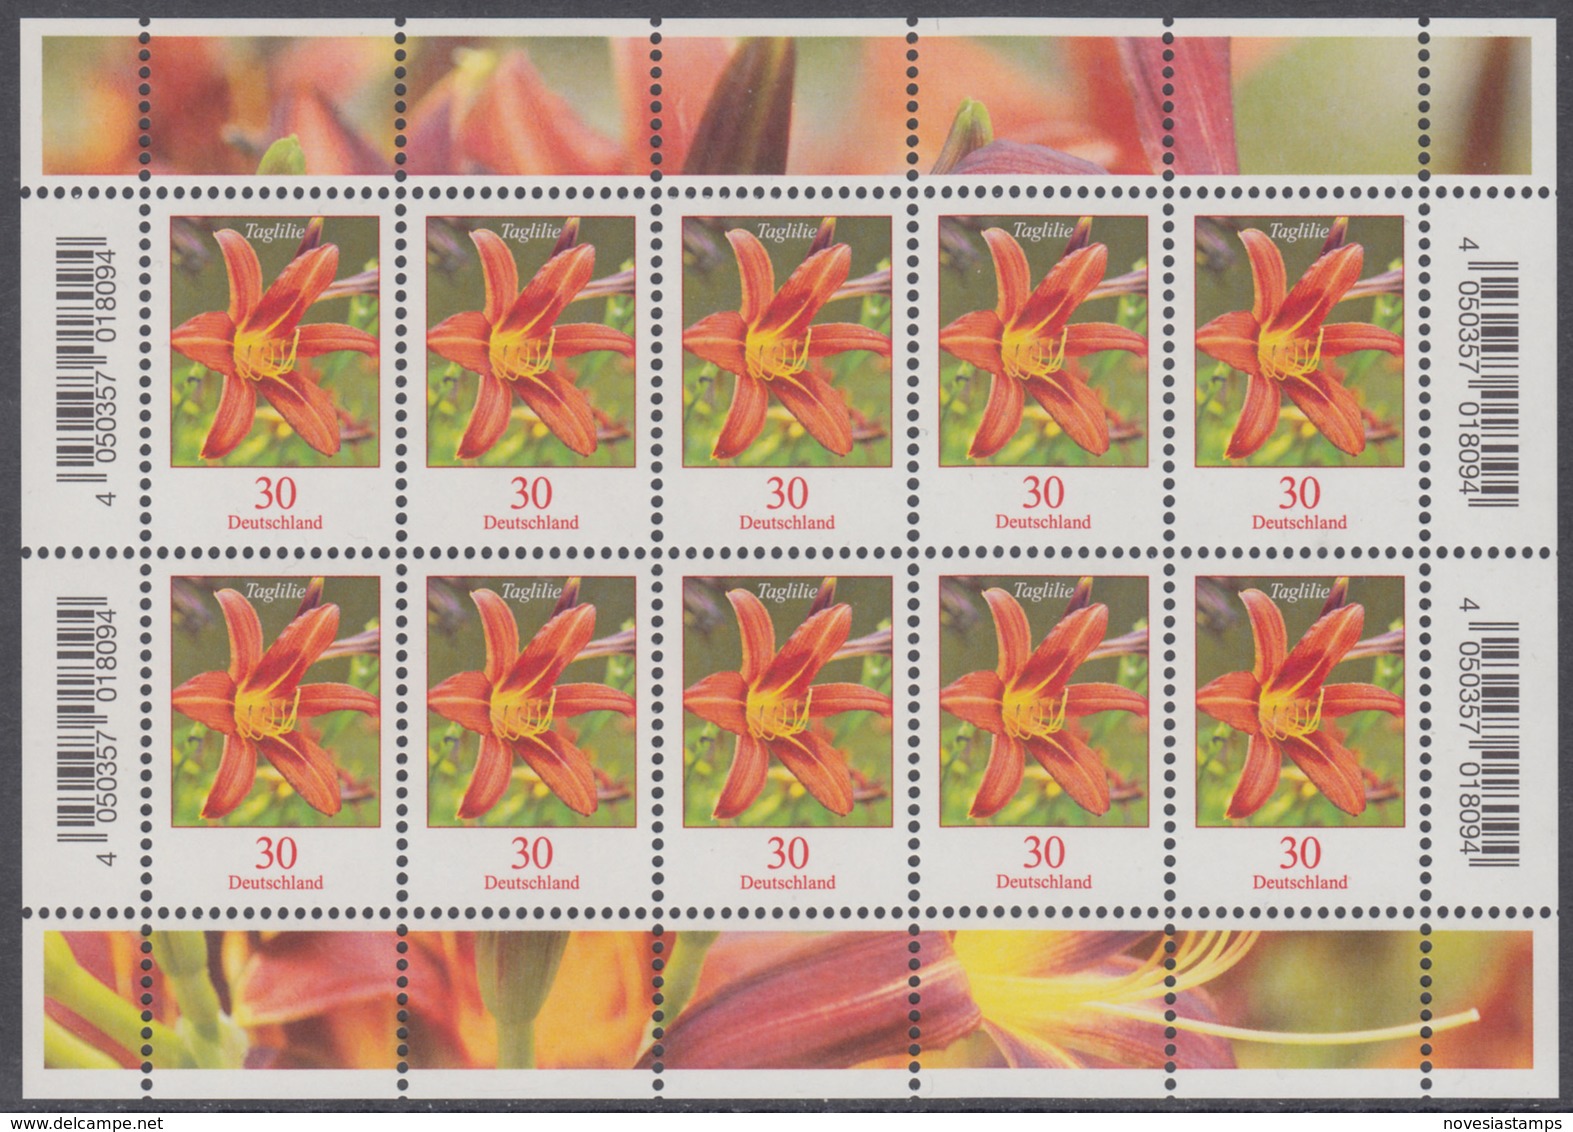 !a! GERMANY 2020 Mi. 3509 MNH SHEET(10) - Flowers: Daylily - Neufs